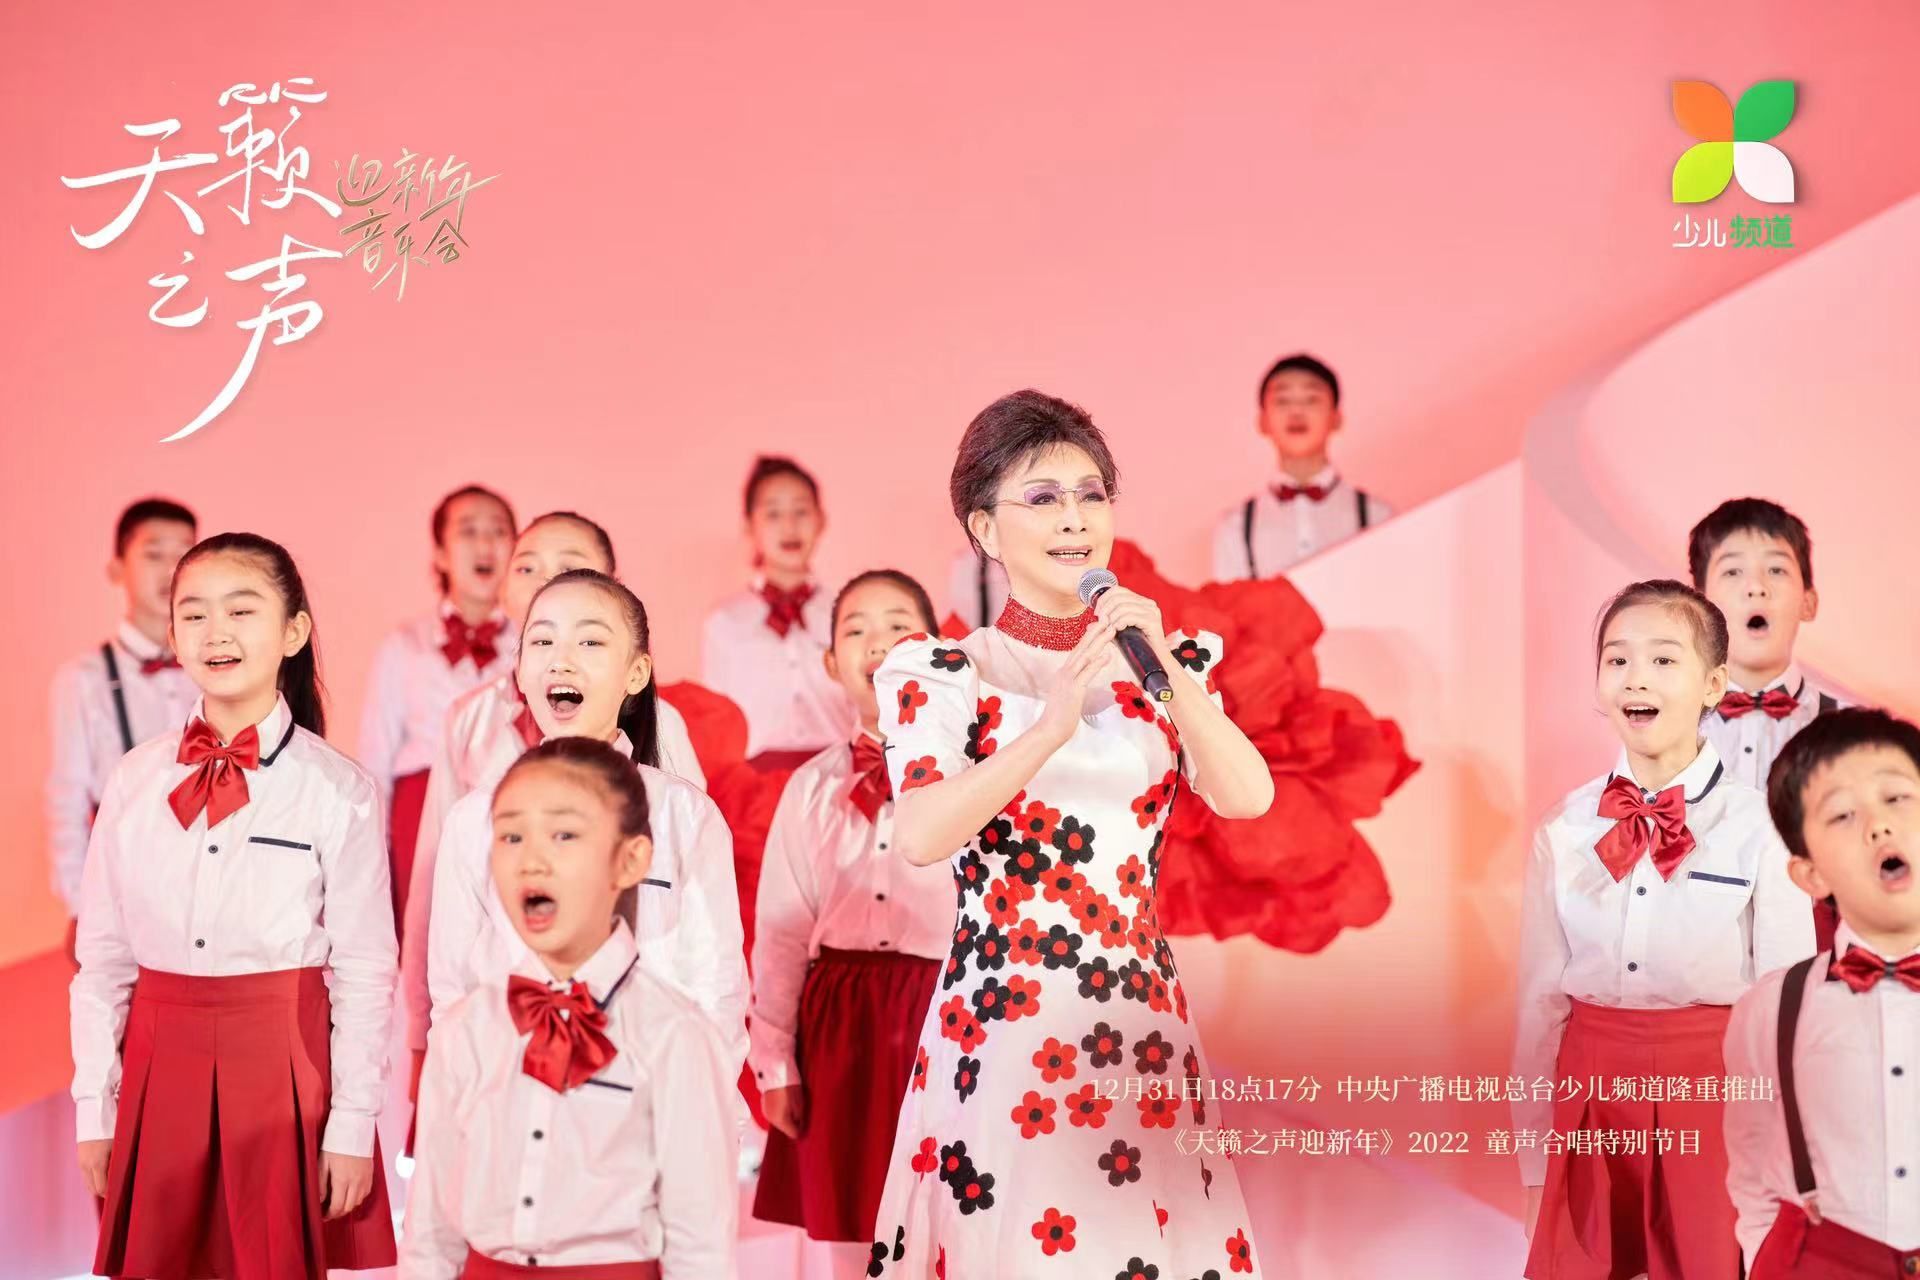 2022童声合唱特别节目《天籁之声迎新年》明晚央视播出